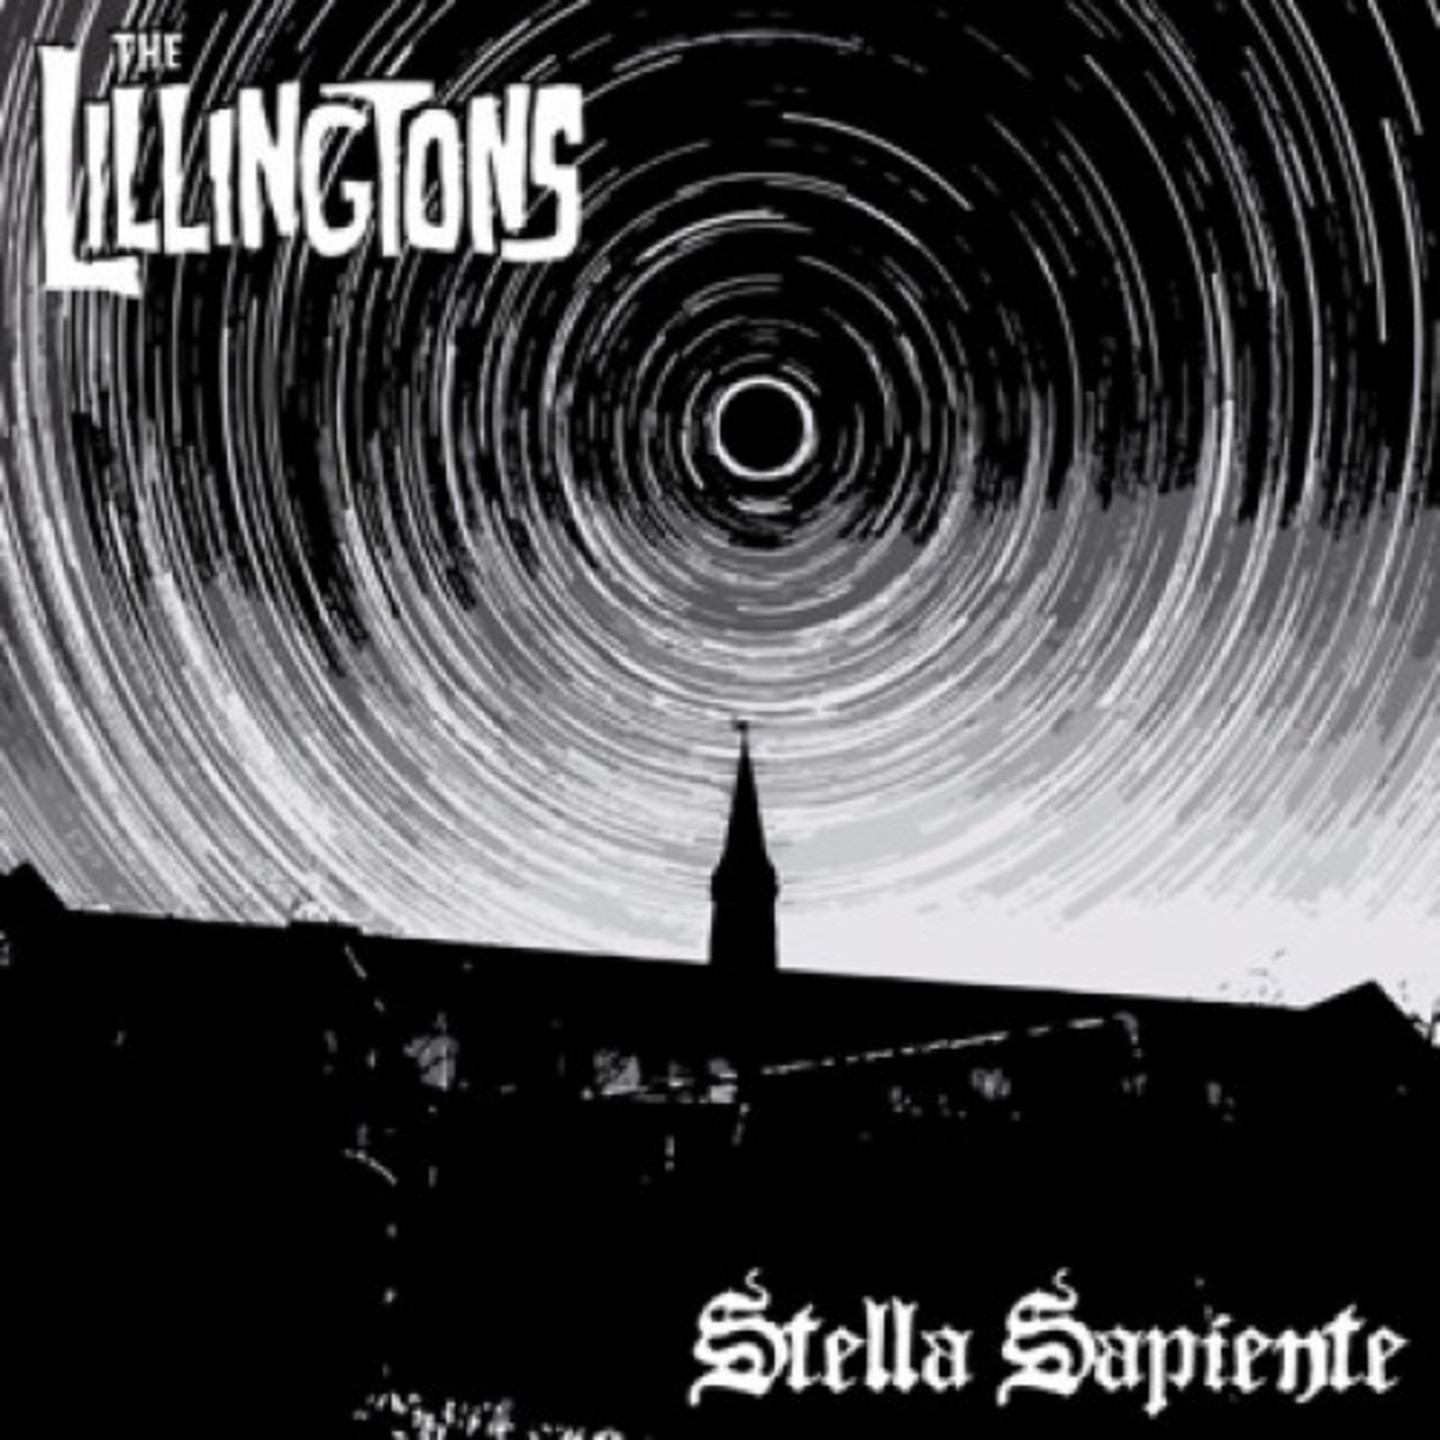 LILLINGTONS, THE - Stella Sapiente LP